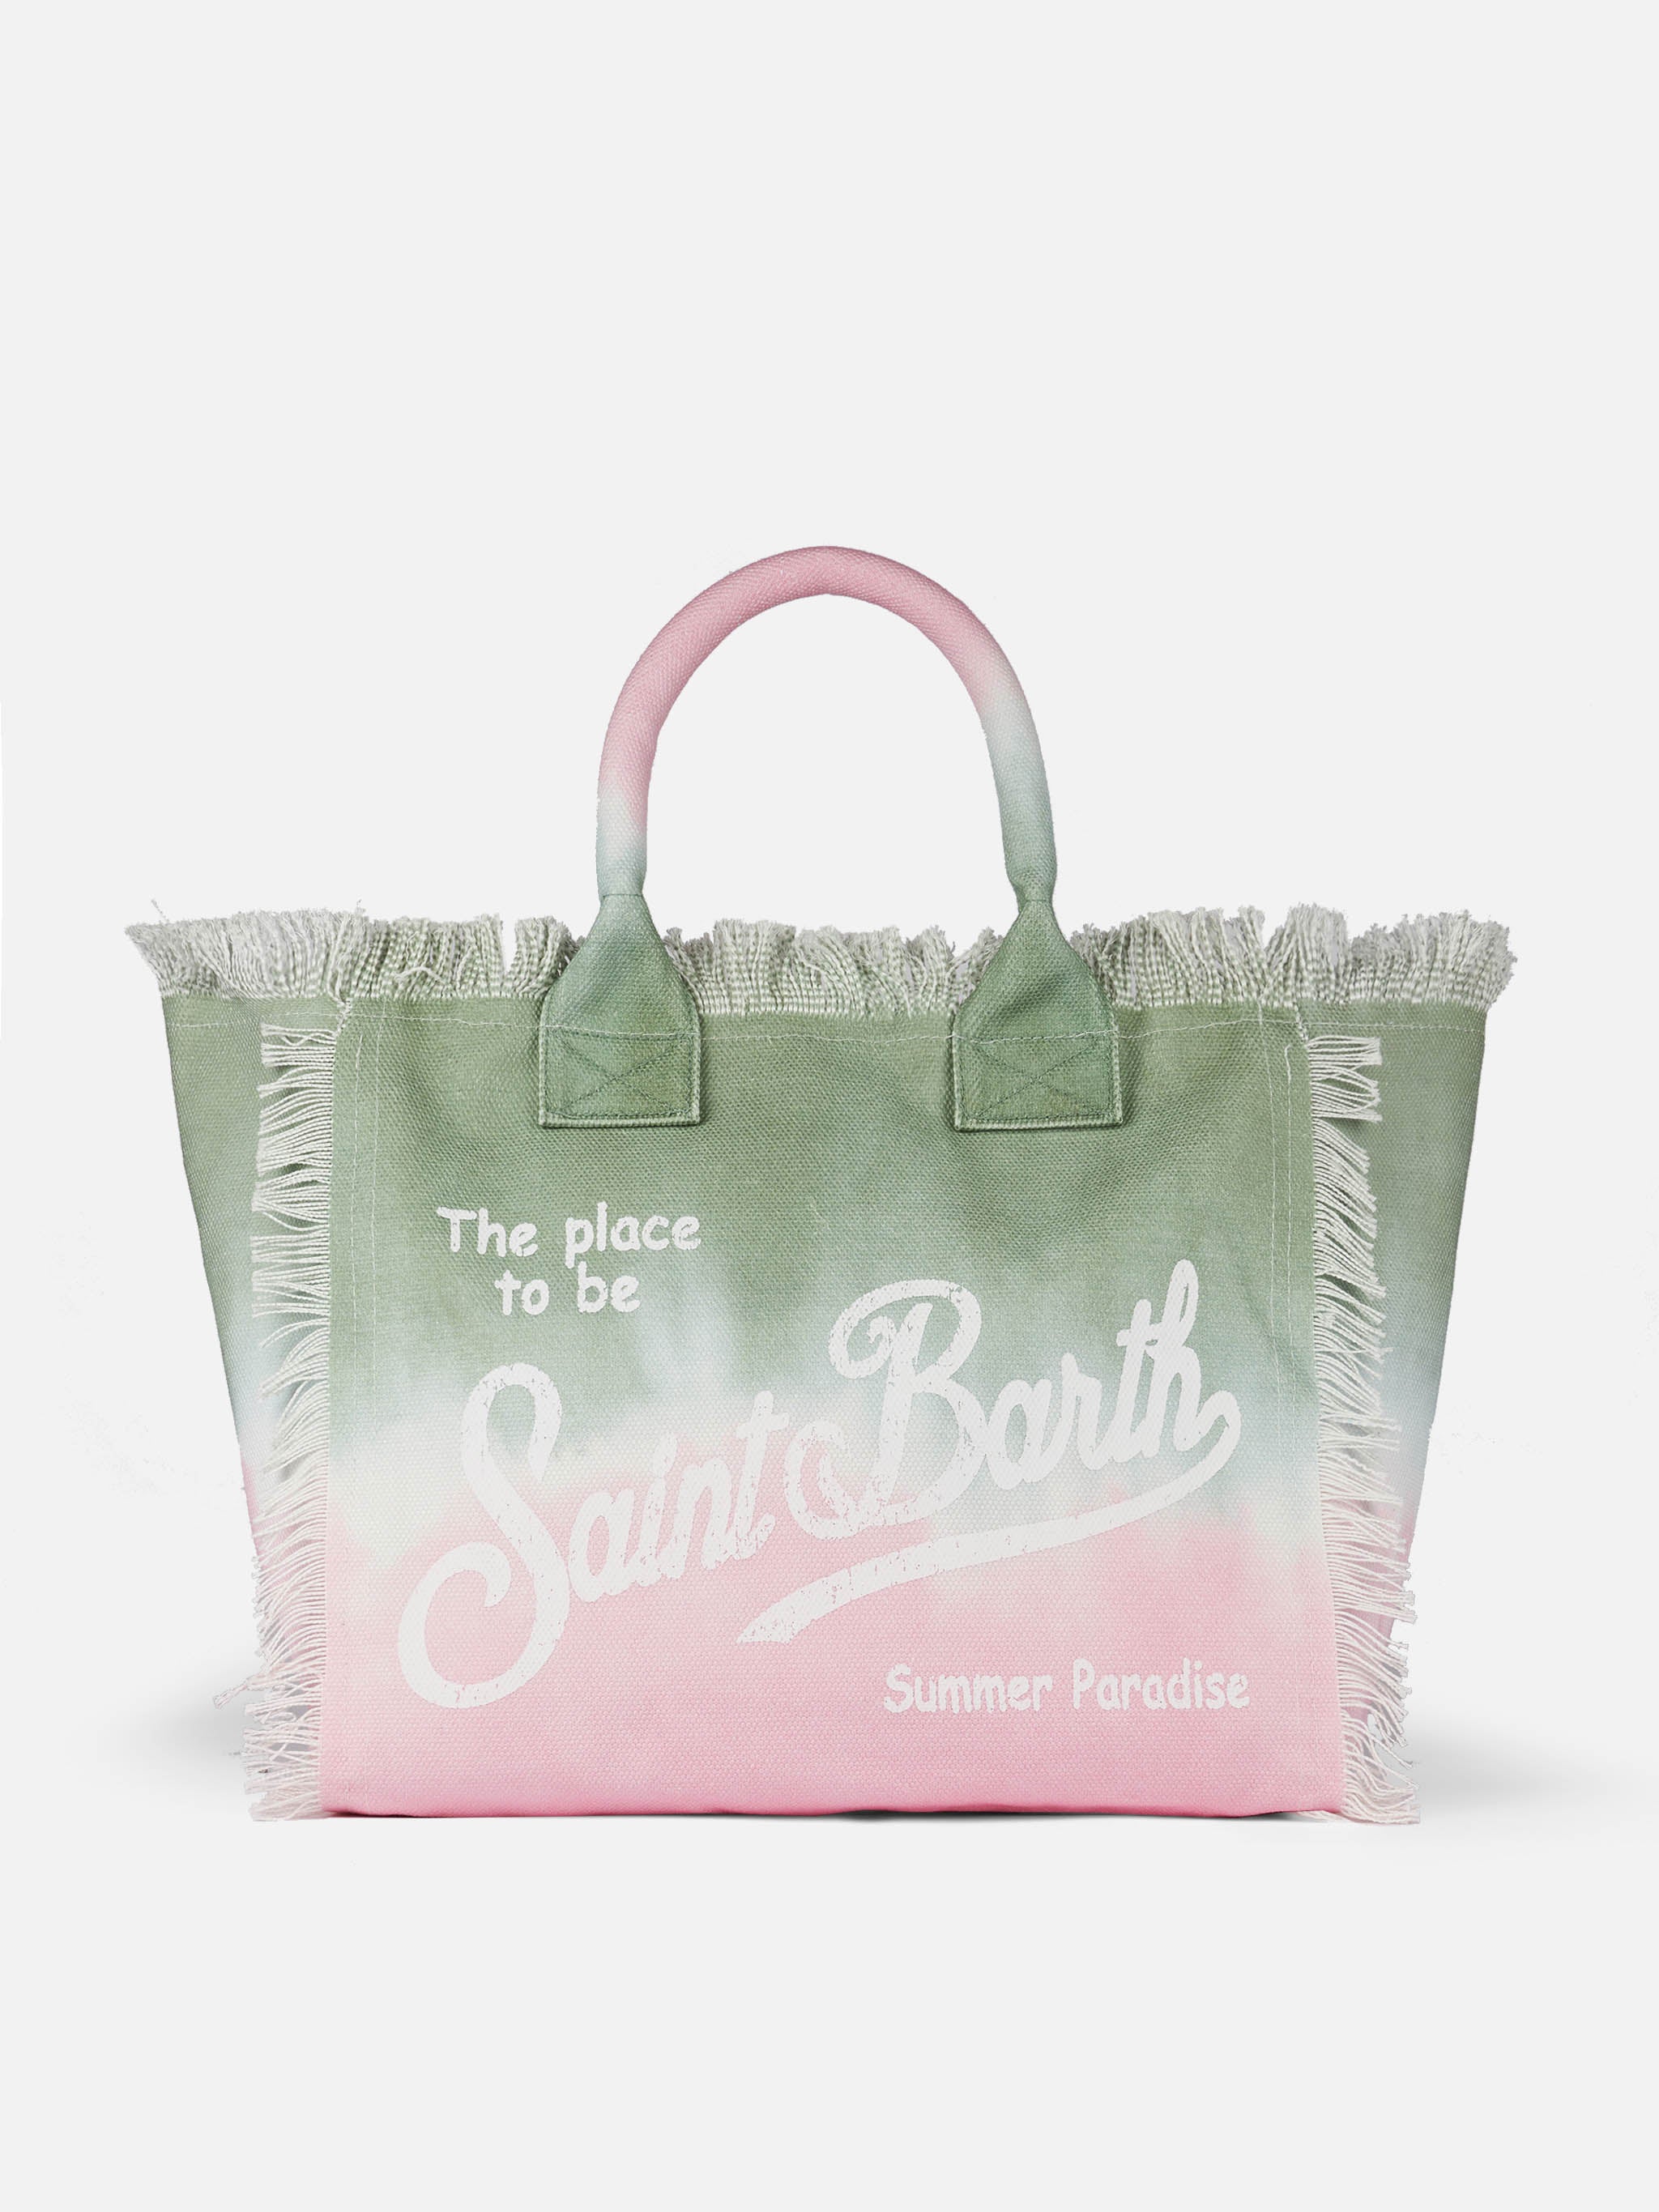 The Mc2 Saint Barth Collection: Women's beach bags